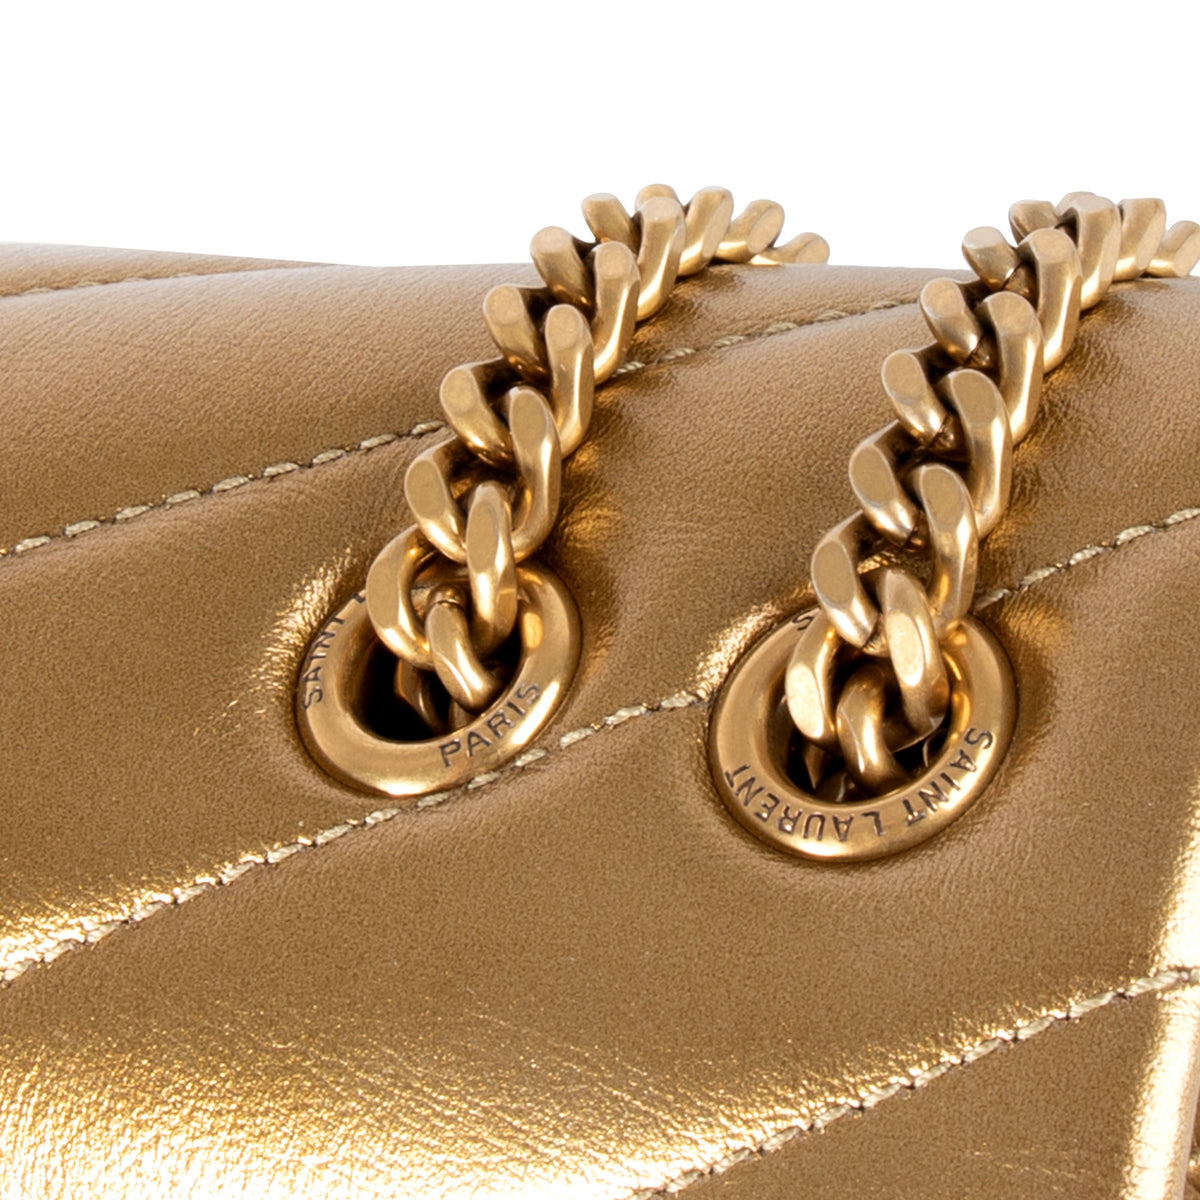 Saint Laurent Gold Matelassé Calfskin Leather Loulou Small Shoulder Bag